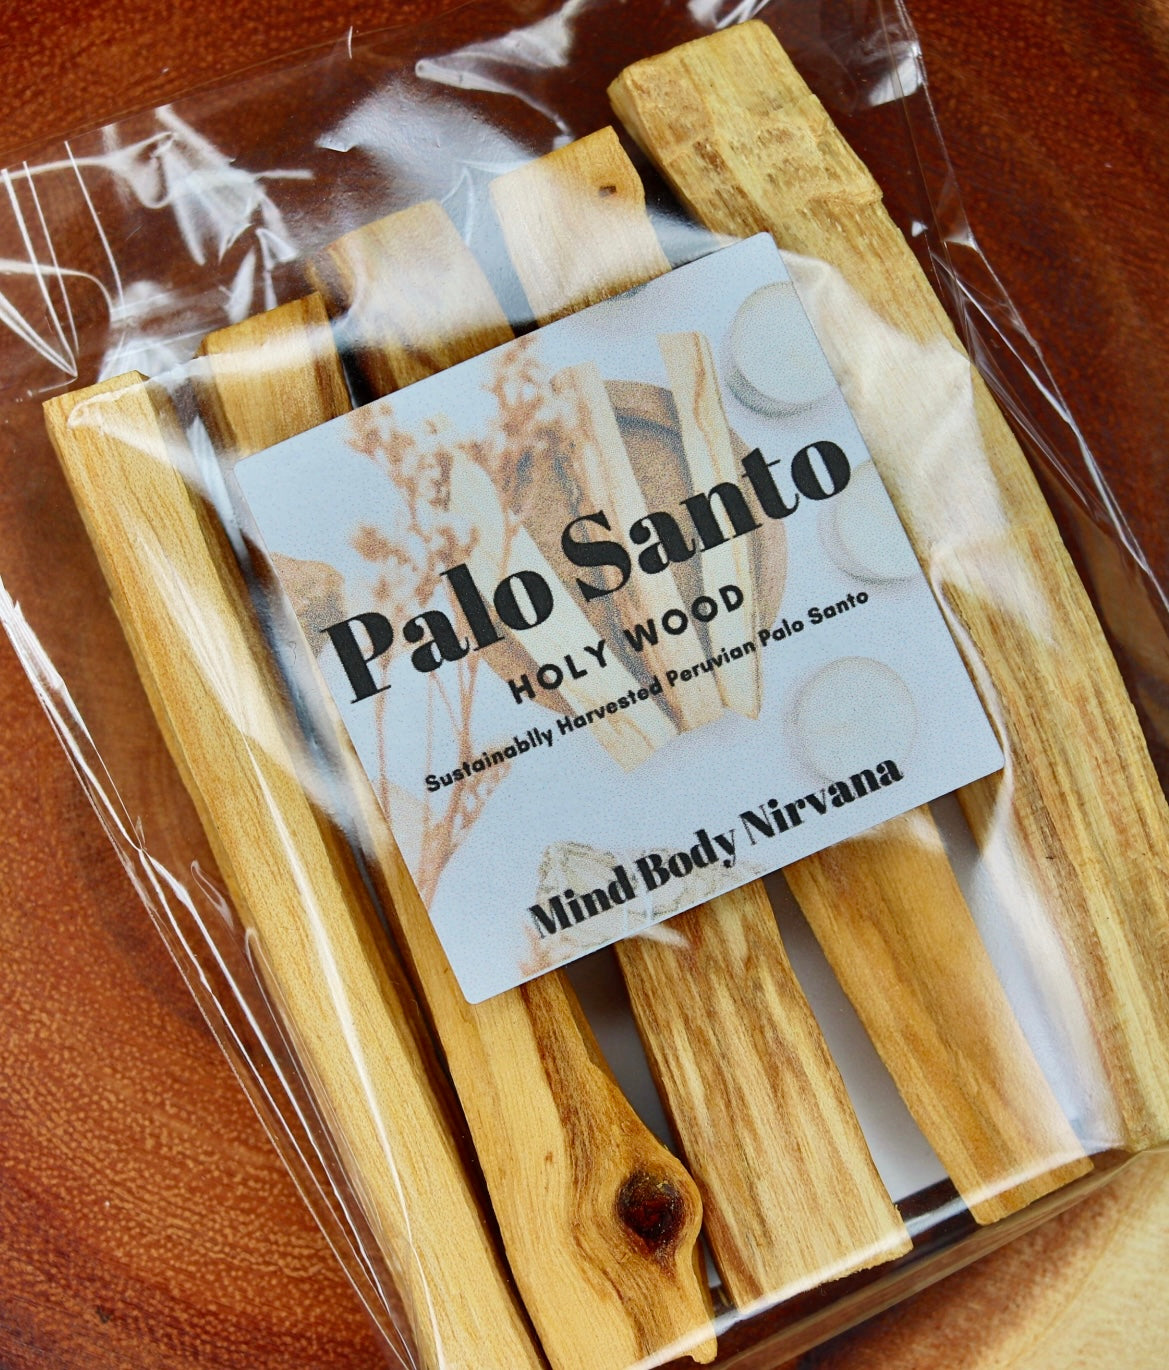 Palo Santo aka "Holy Wood"